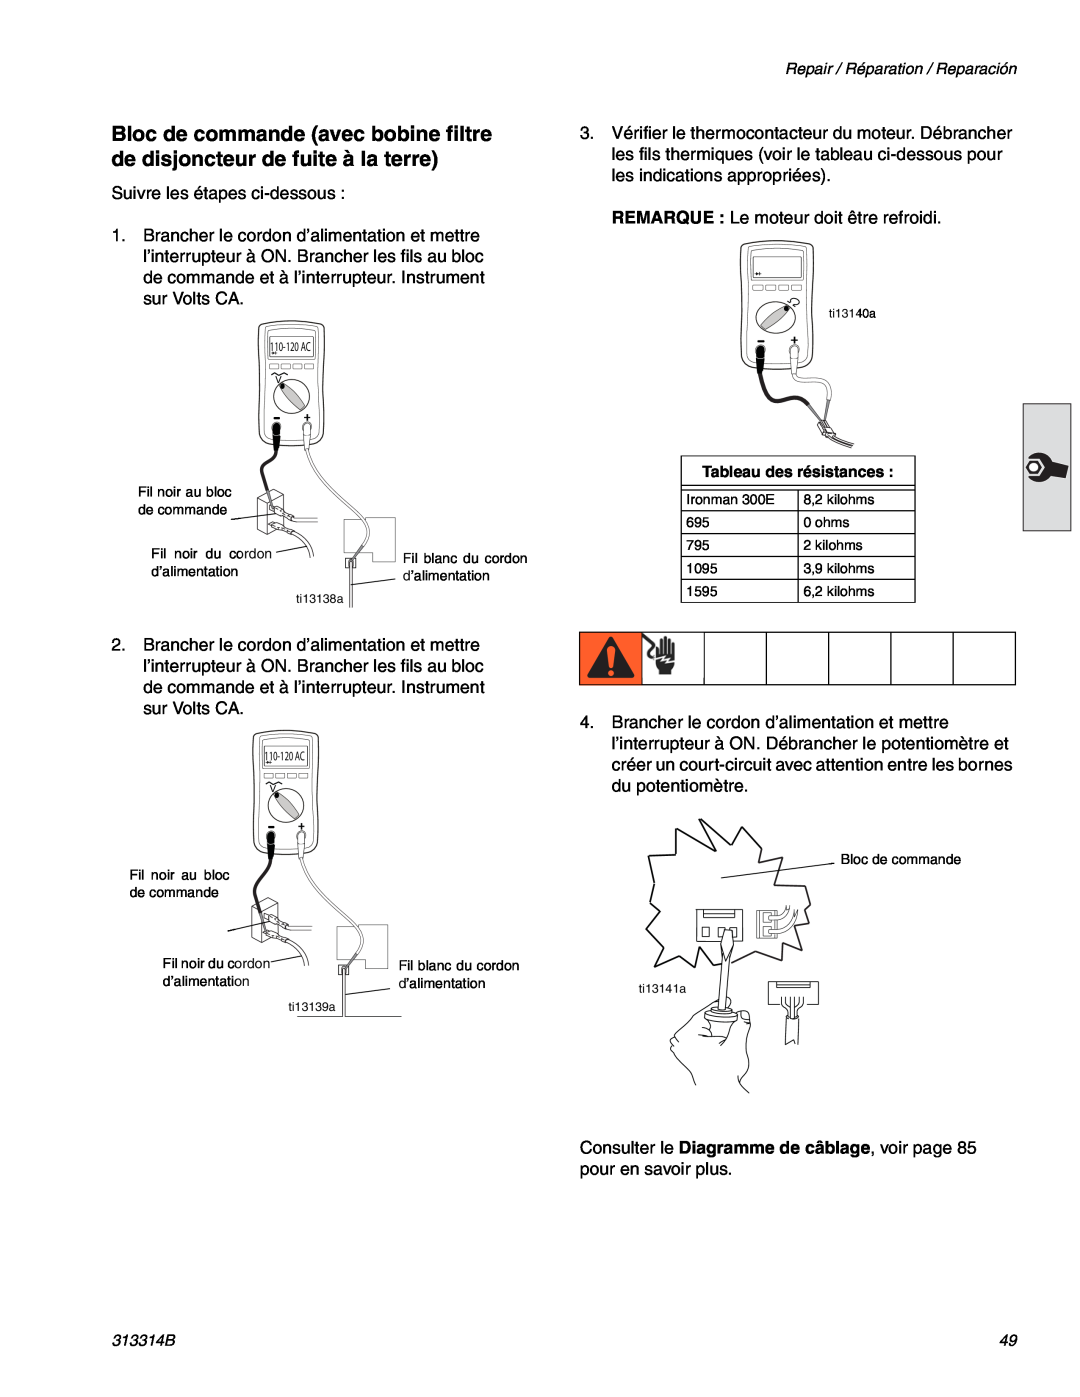 Graco Inc 300E, 313314B important safety instructions Suivre les étapes ci-dessous 